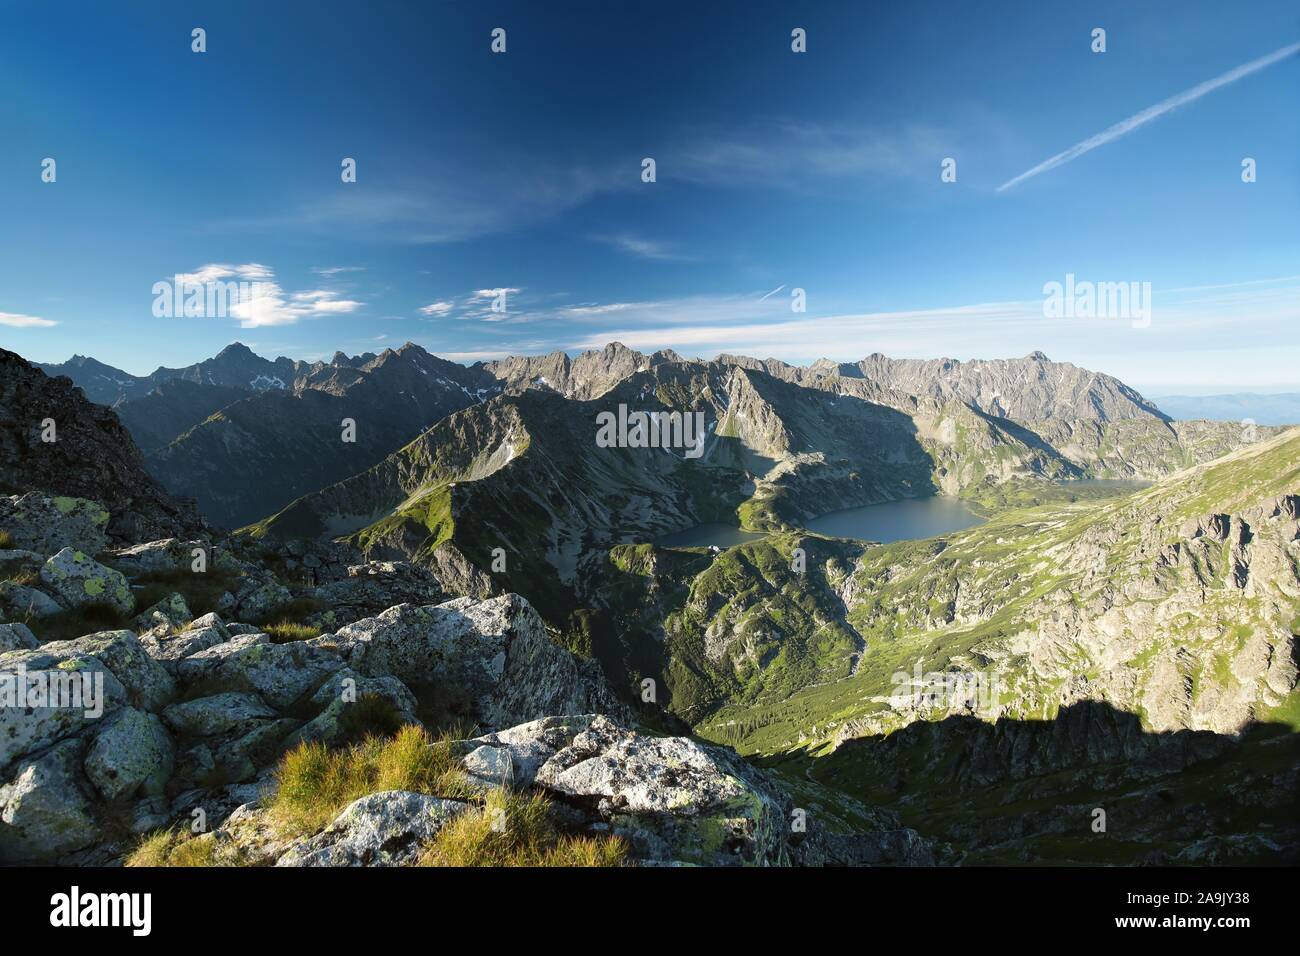 Vista panoramica sui monti Tatra. I Monti Tatra sono le vette più alte dei Carpazi sulla frontiera polacco-slovacca. Foto Stock